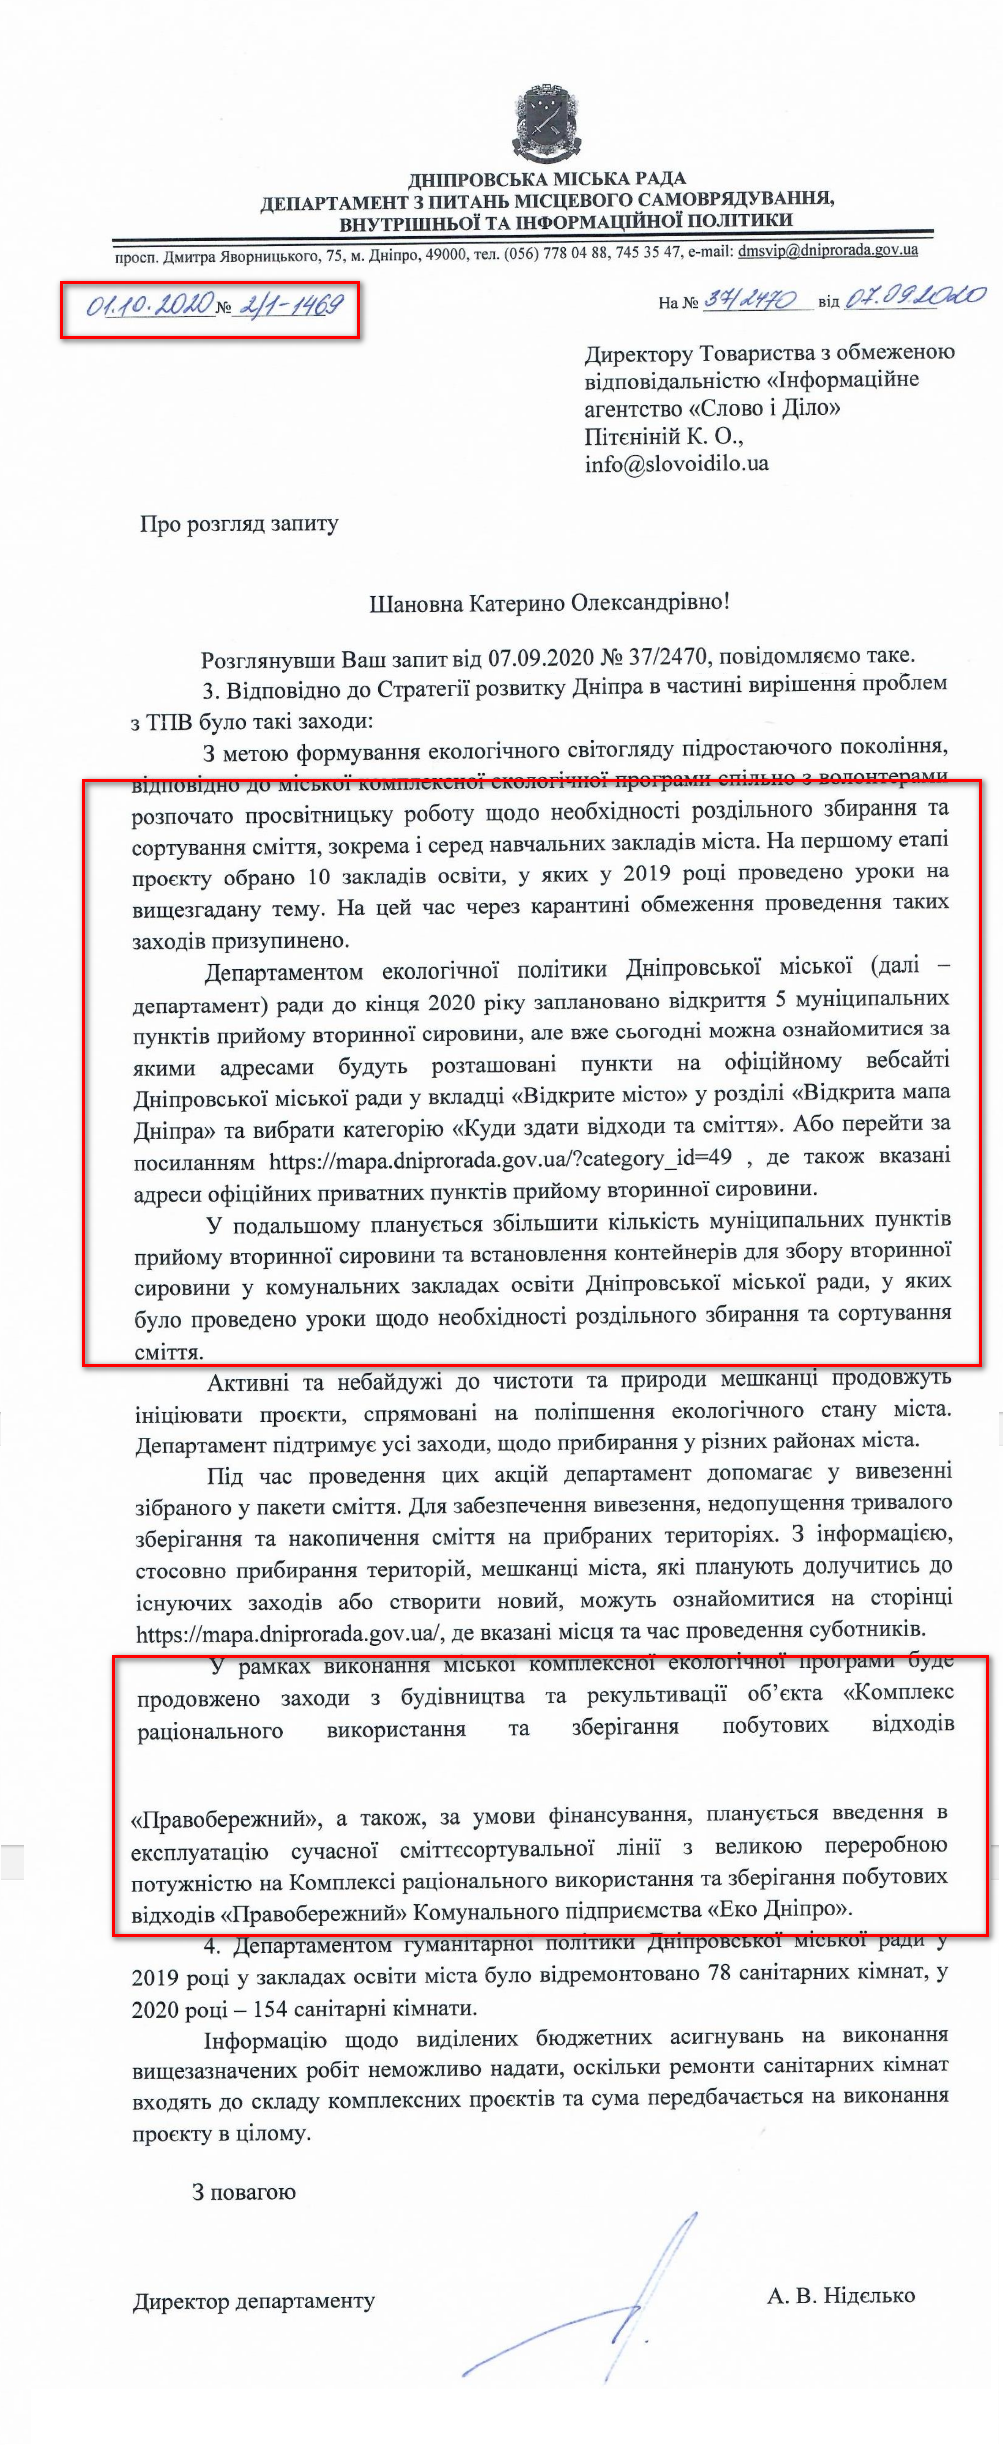 Лист Дніпровської МР від 1 жовтня 2020 року